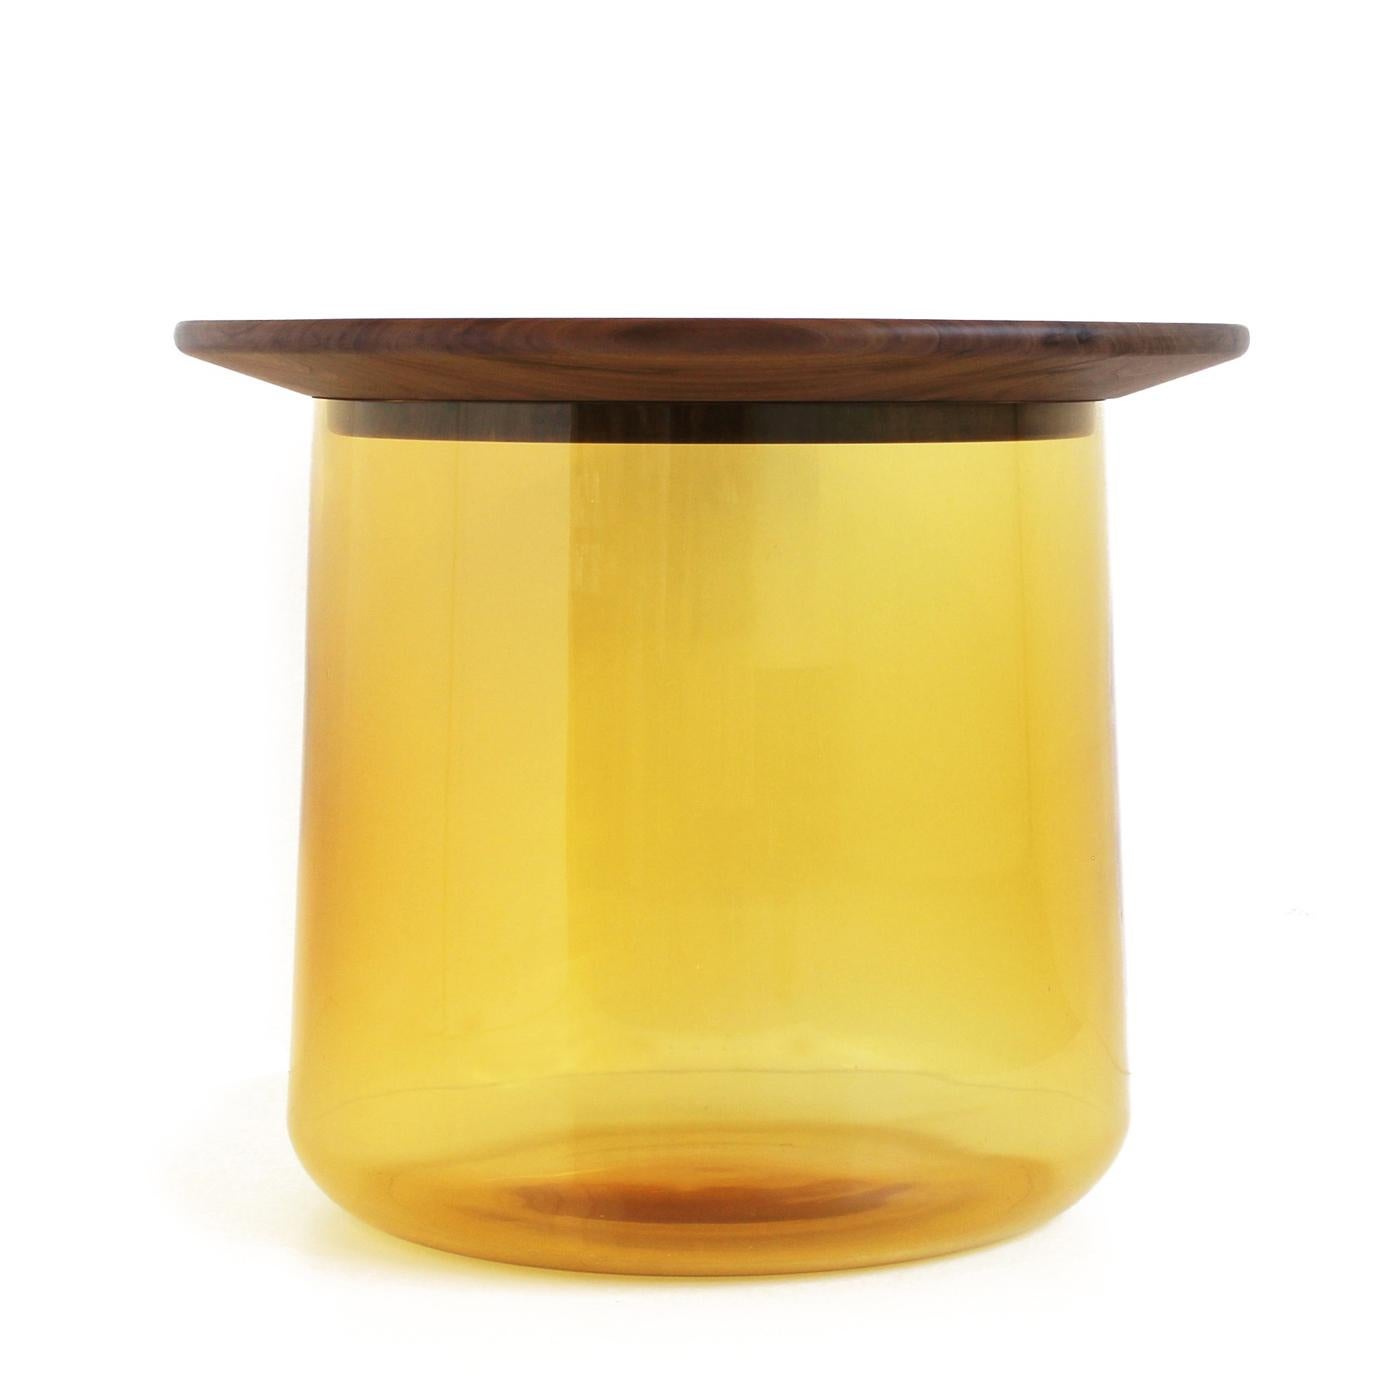 Cette étonnante table d'appoint est composée d'un grand vase inférieur en verre coloré (qui peut servir de récipient ou d'espace de rangement), et d'un plateau en noyer massif 